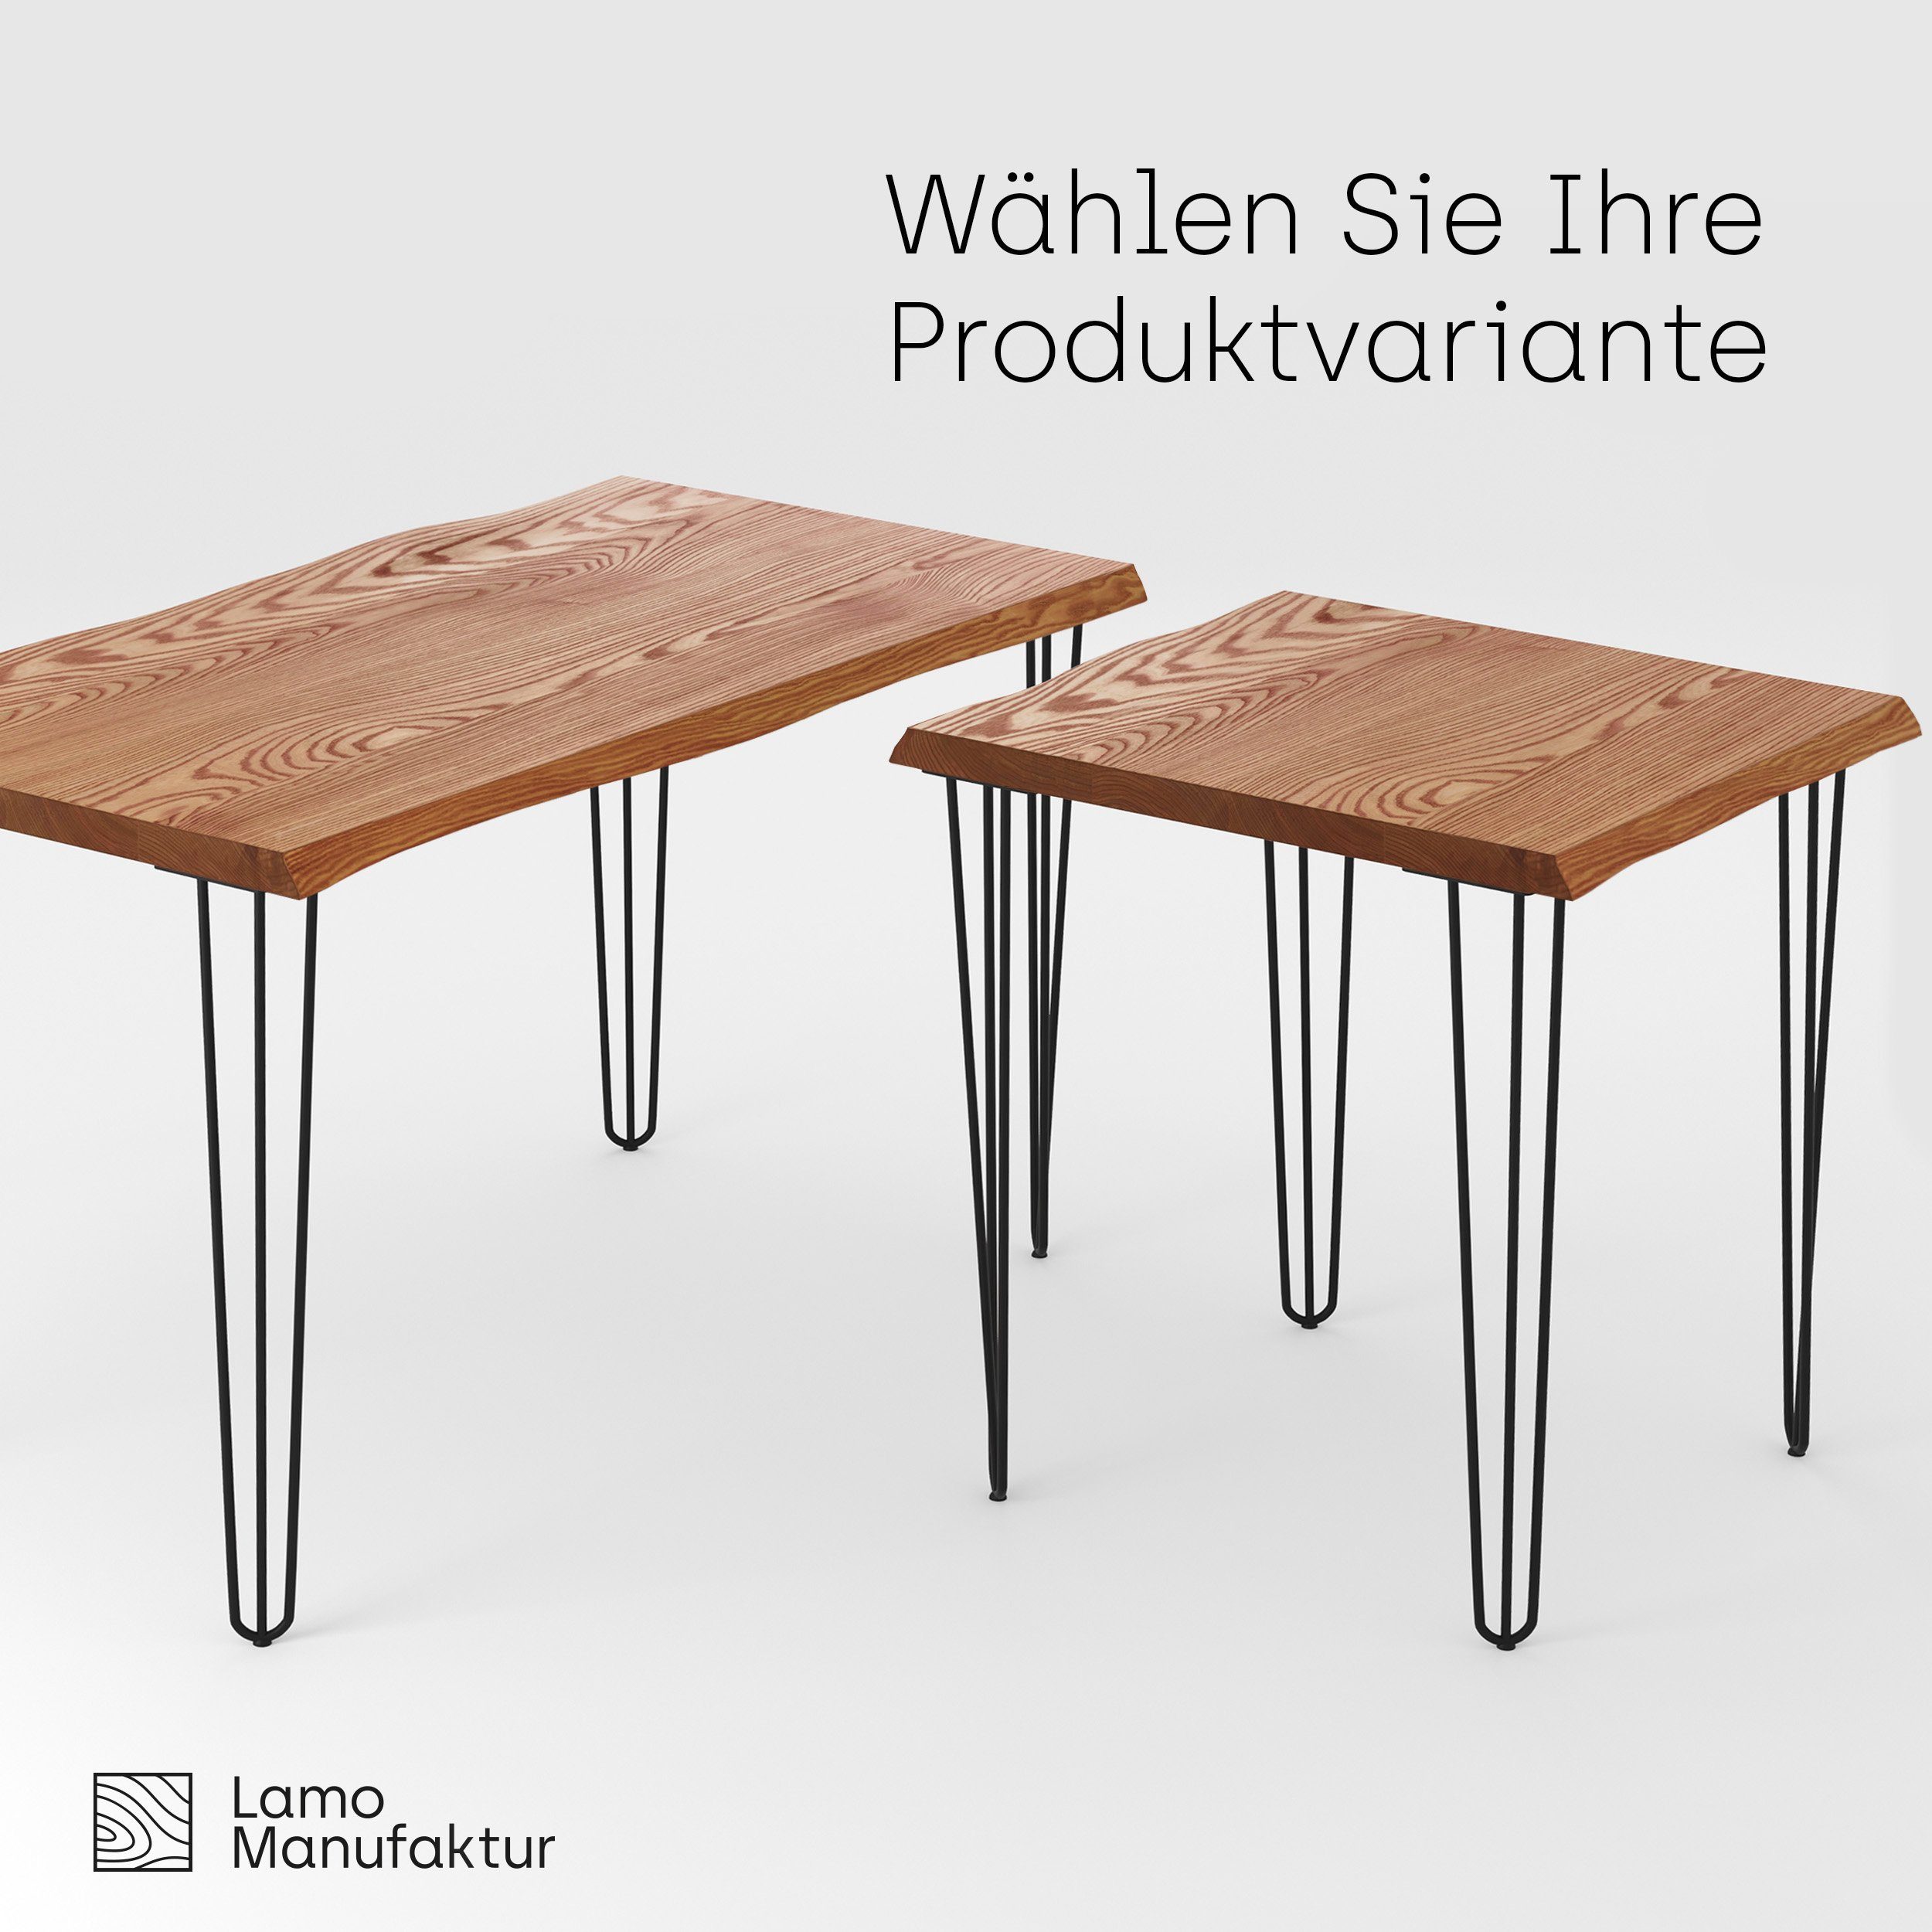 Roh Anthrazit LAMO Manufaktur (1 | Baumkantentisch massiv Massivholz Creative Esstisch Metallgestell inkl. Baumkante Tisch),